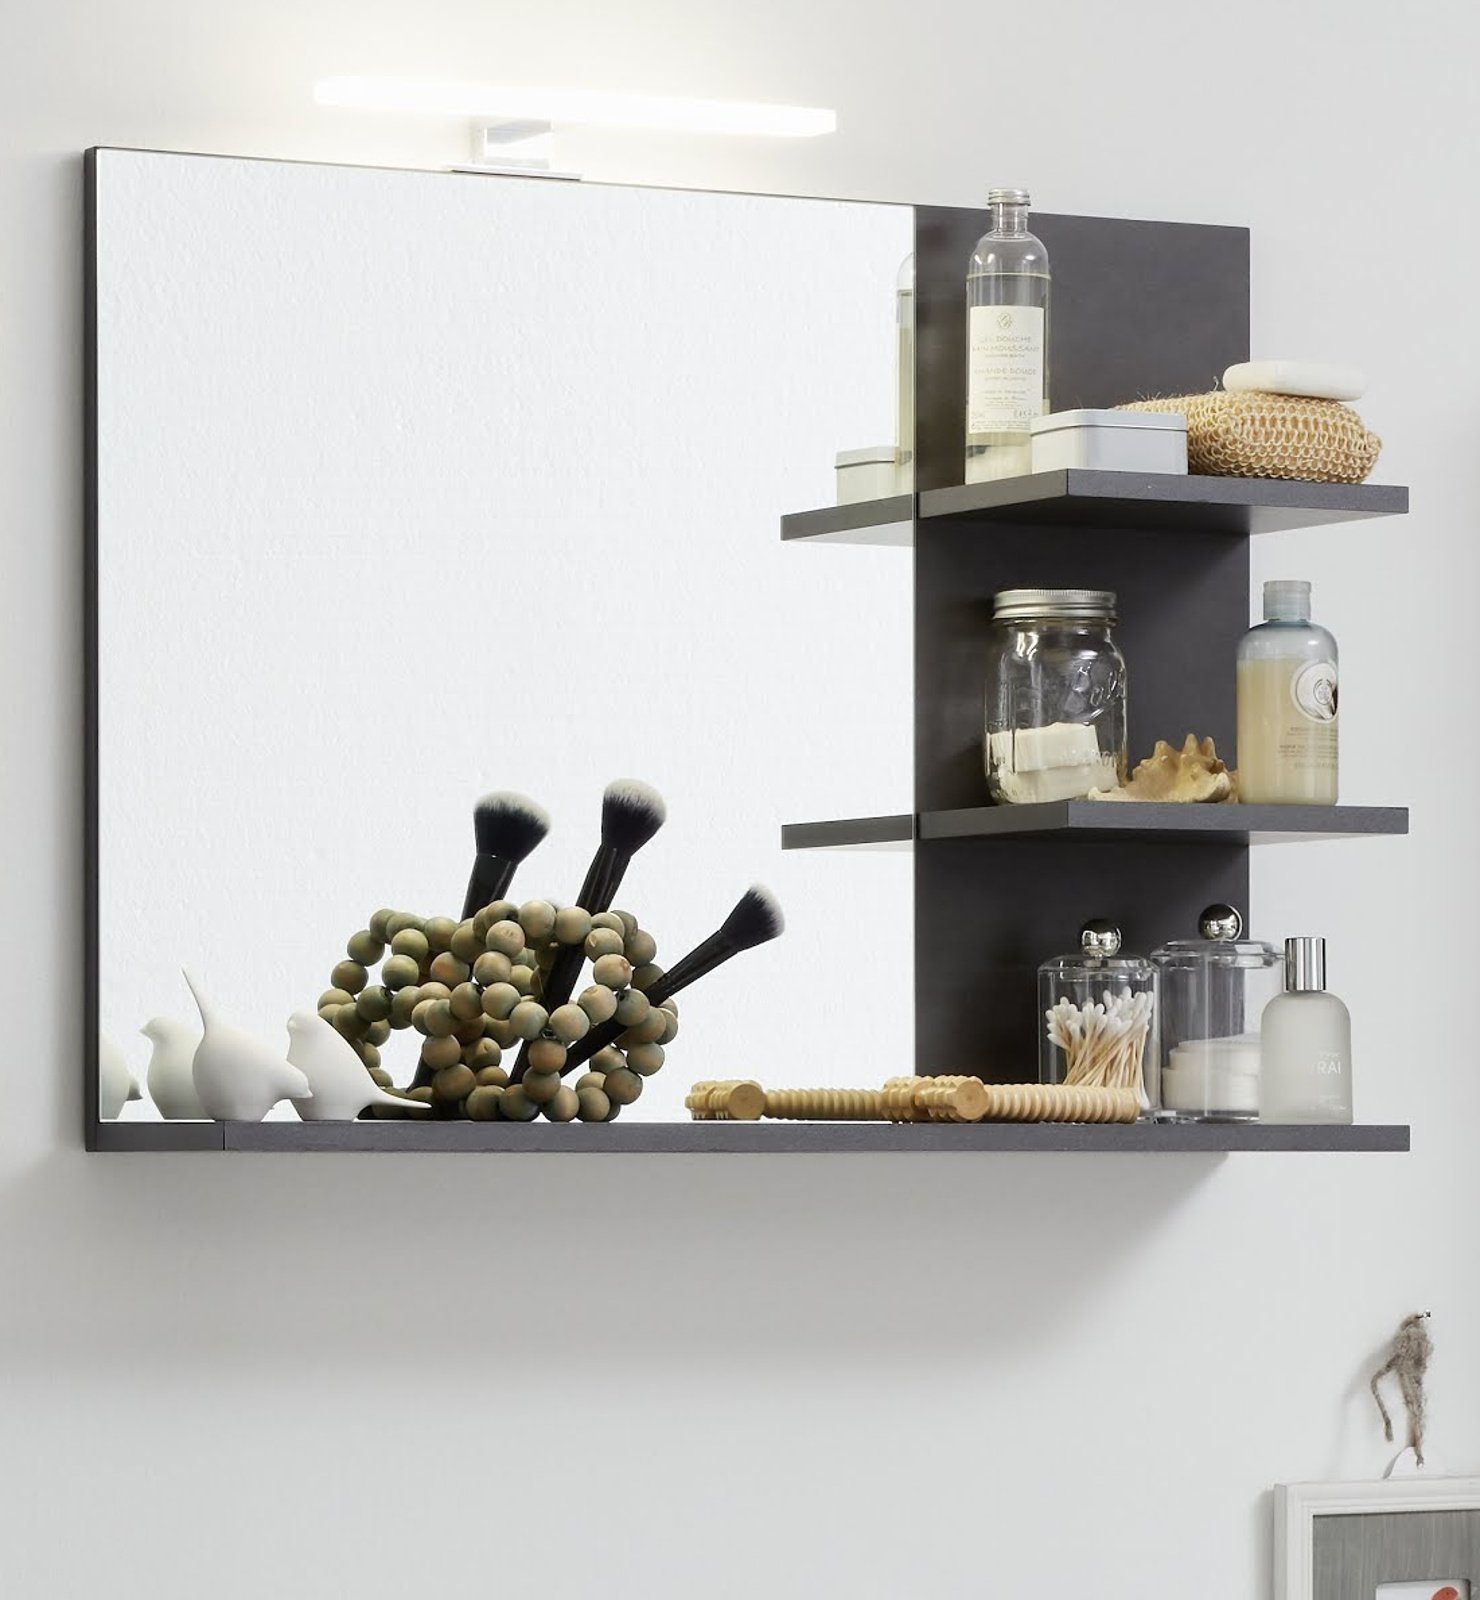 trendteam Badspiegel Indy (Wandspiegel in Matera grau, 72 x 57 cm), mit Regal